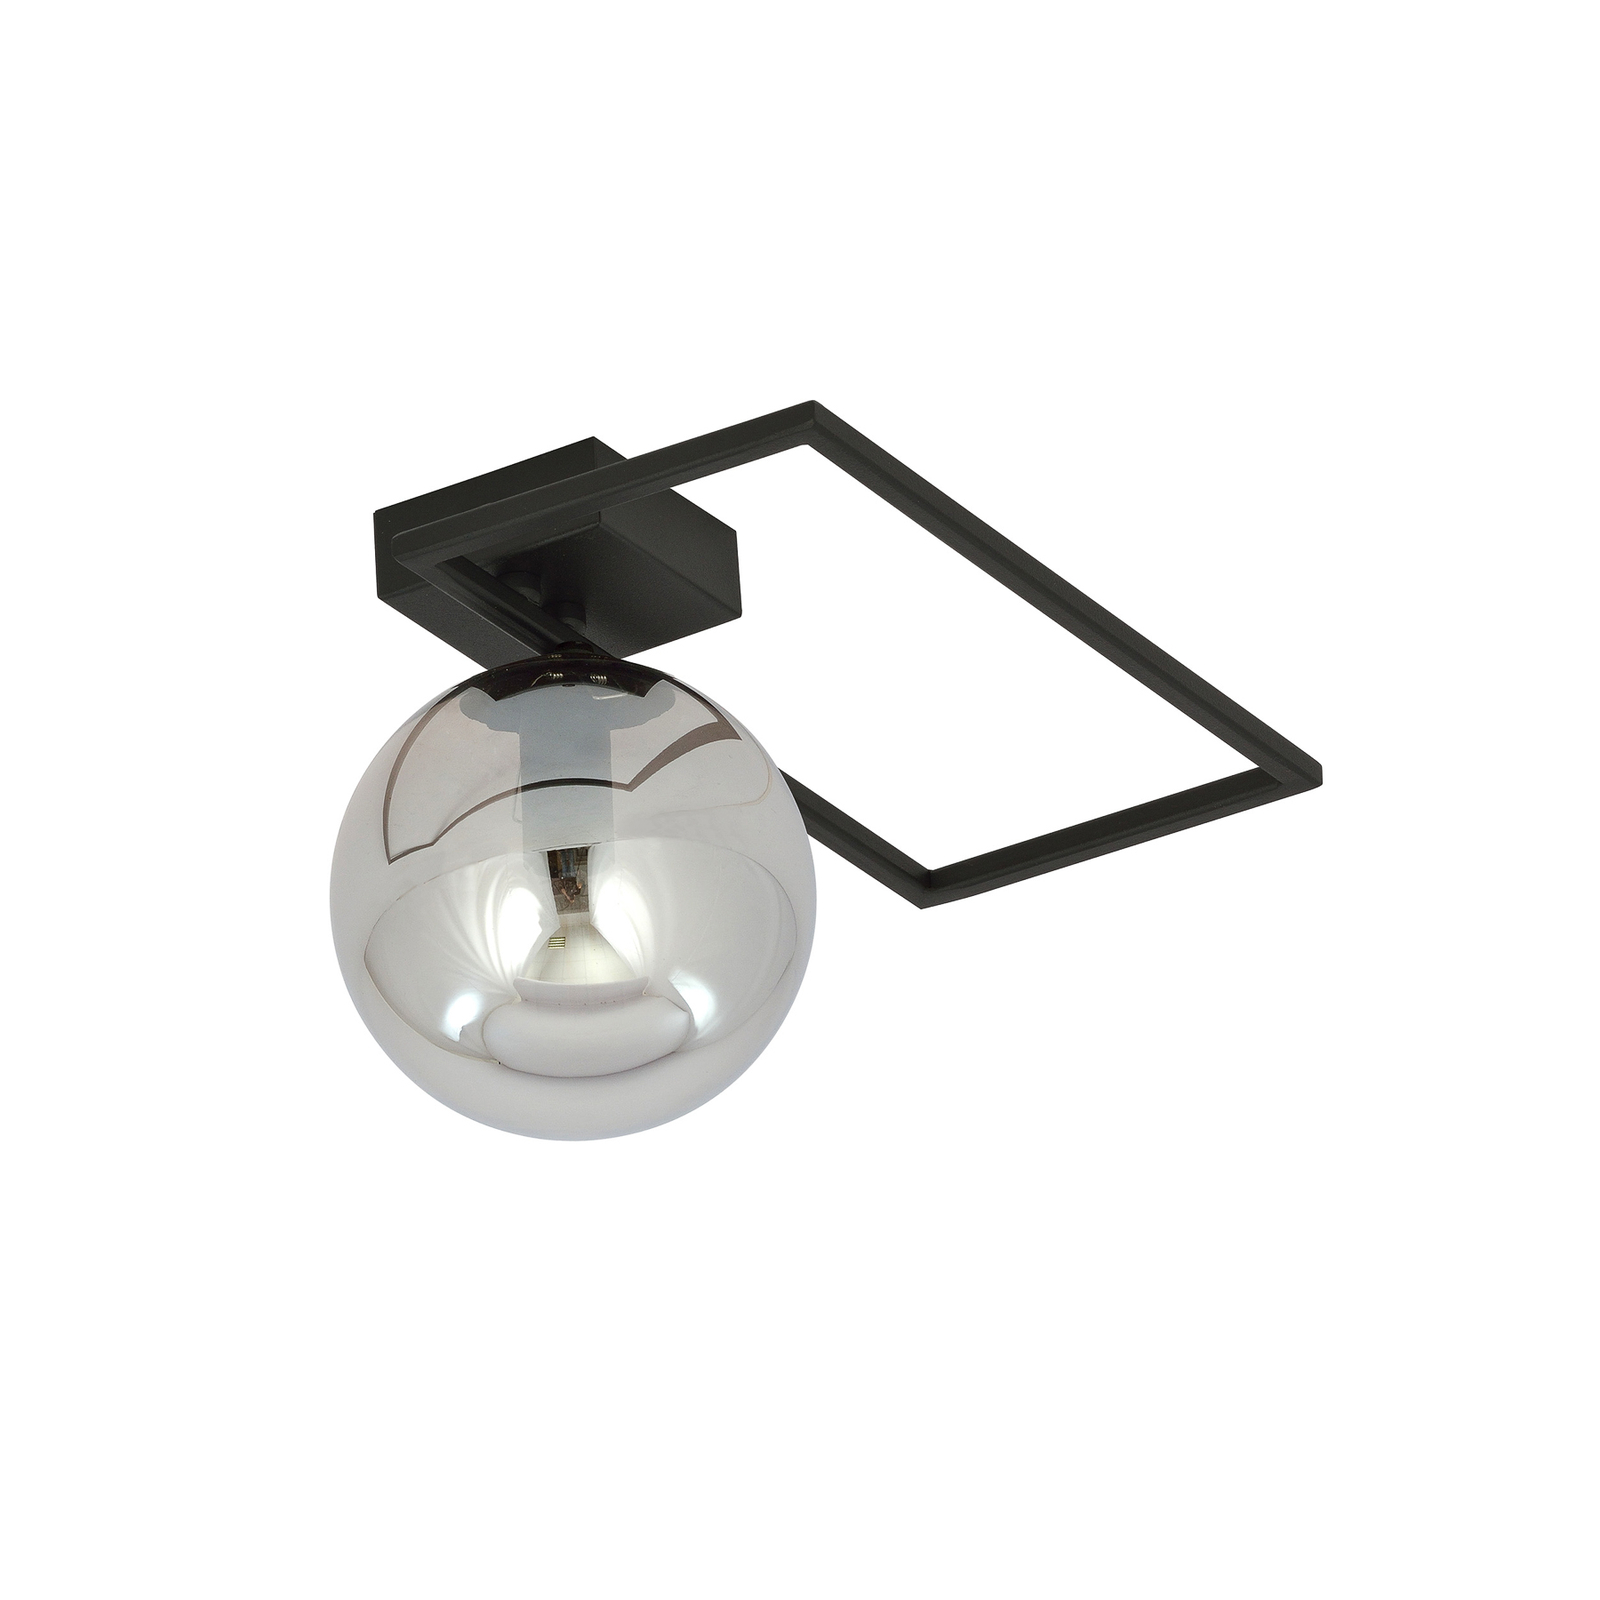 Imago 1D ceiling light, one-bulb, black/graphite